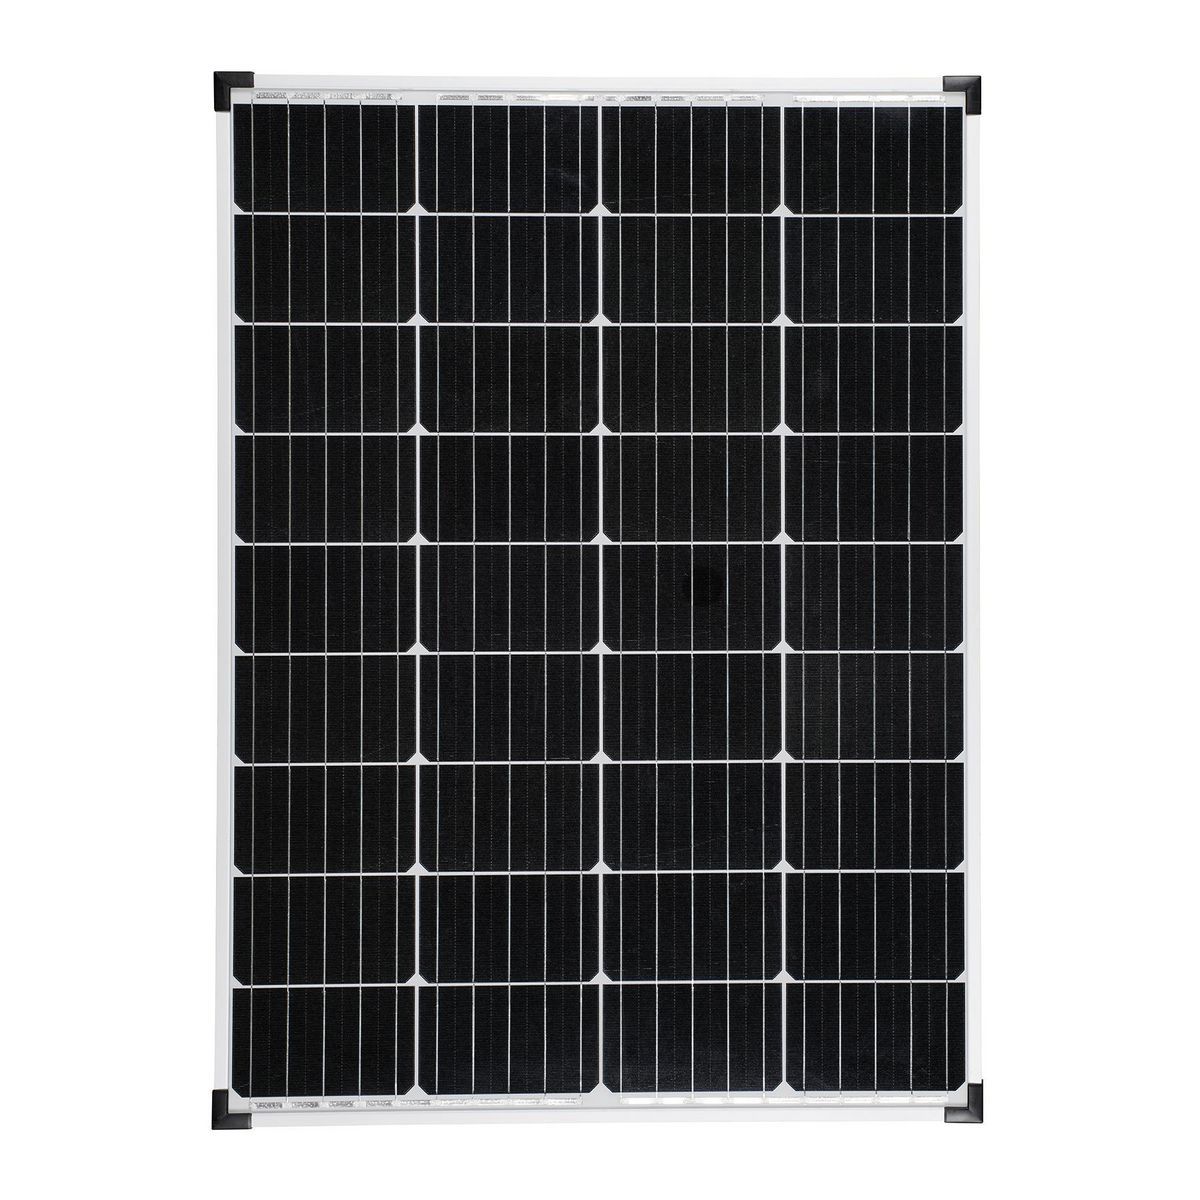 THUNDERBOLT SOLAR 100 Watt Monocrystalline Solar Panel